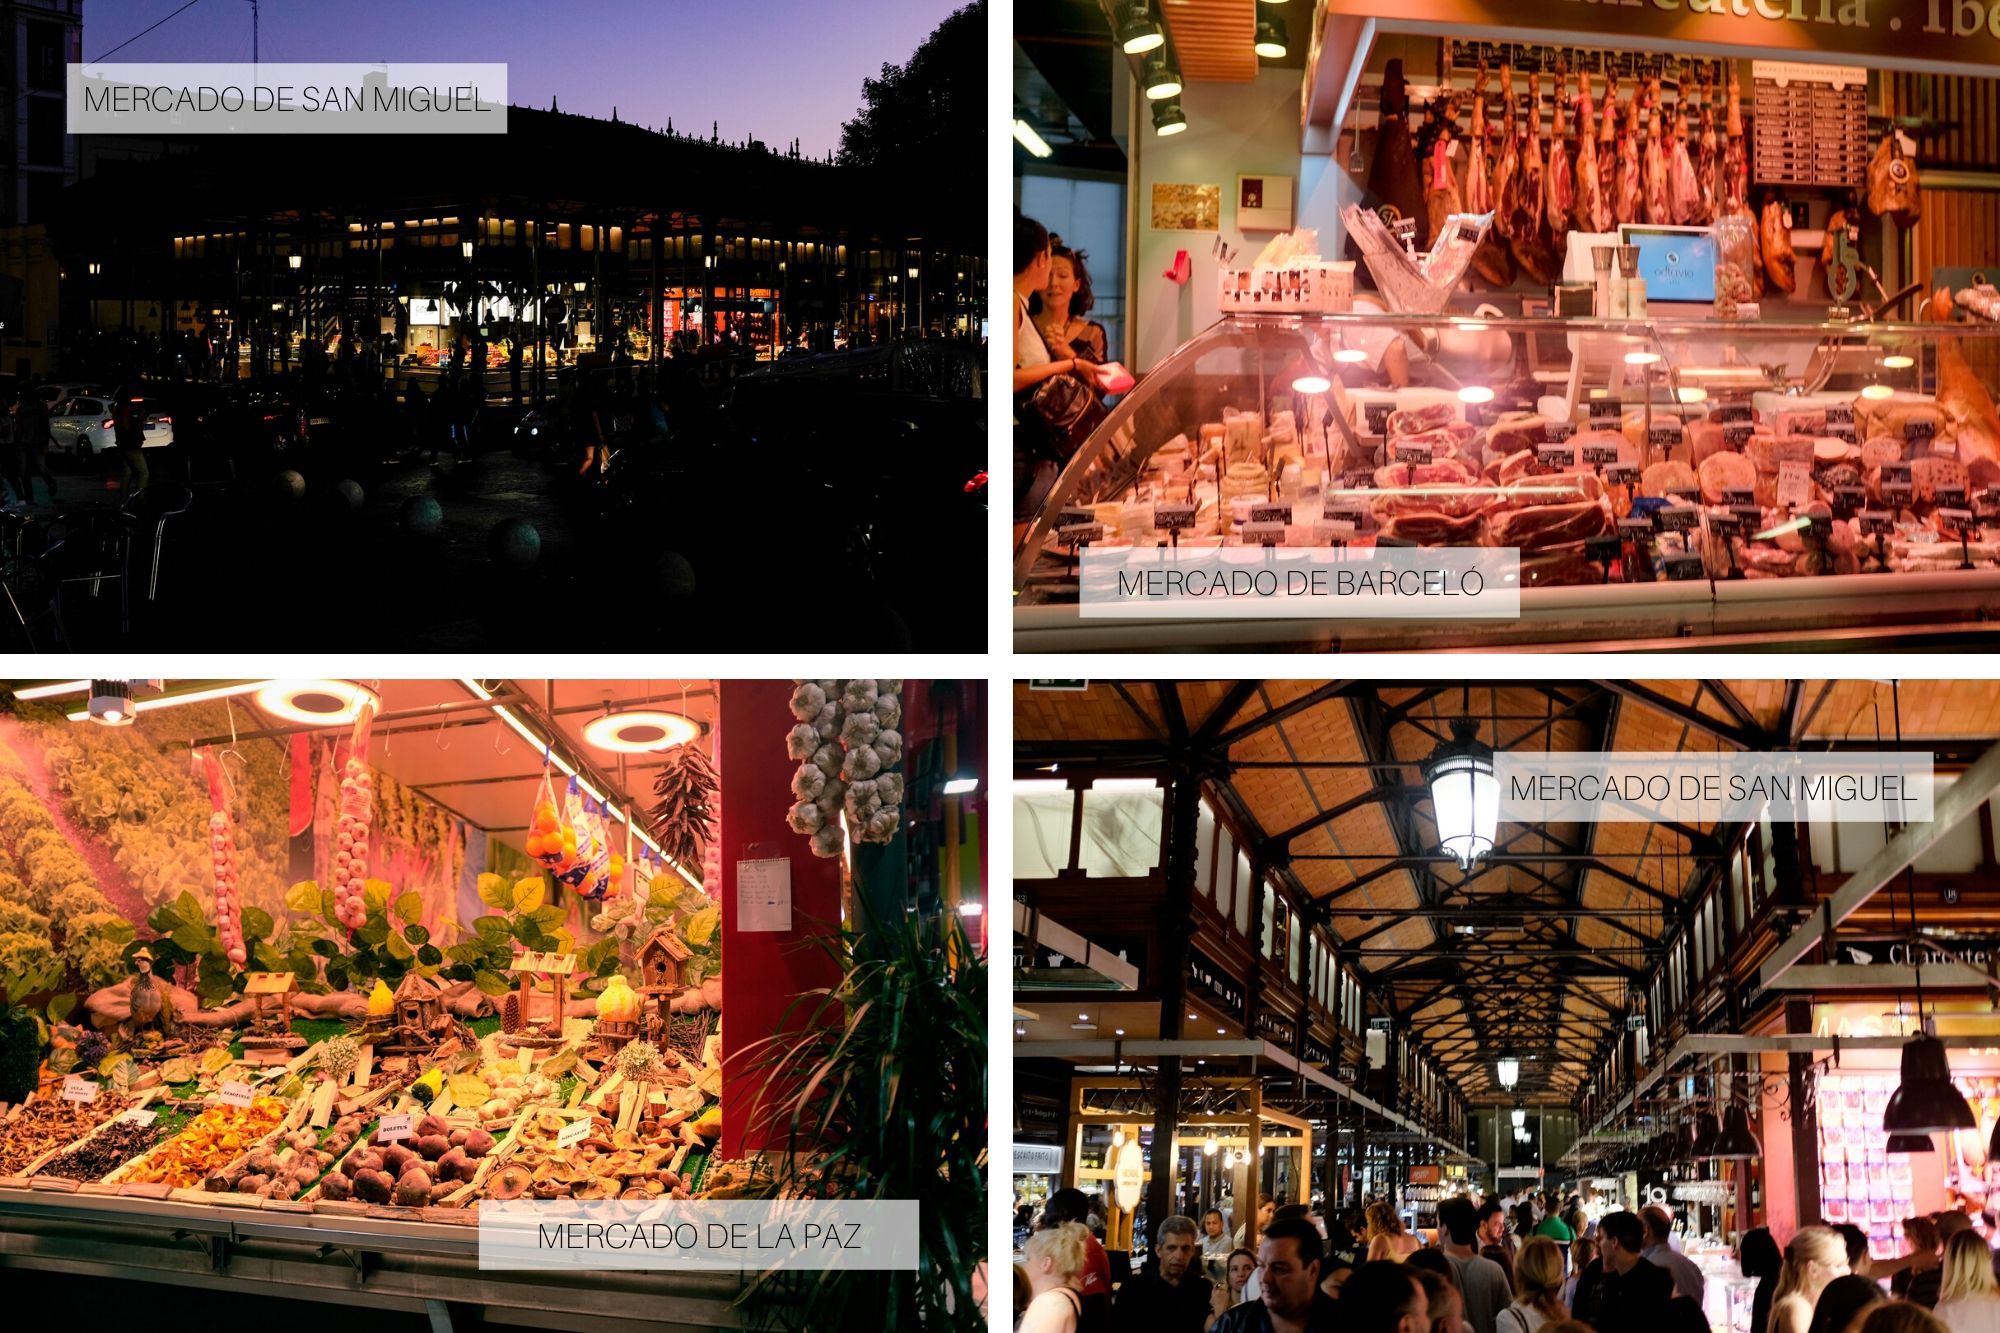 Markets of Madrid: Exterior and interior of Mercado de san Miguel; stalls in Mercado de la Paz and Mercado de Barcelo